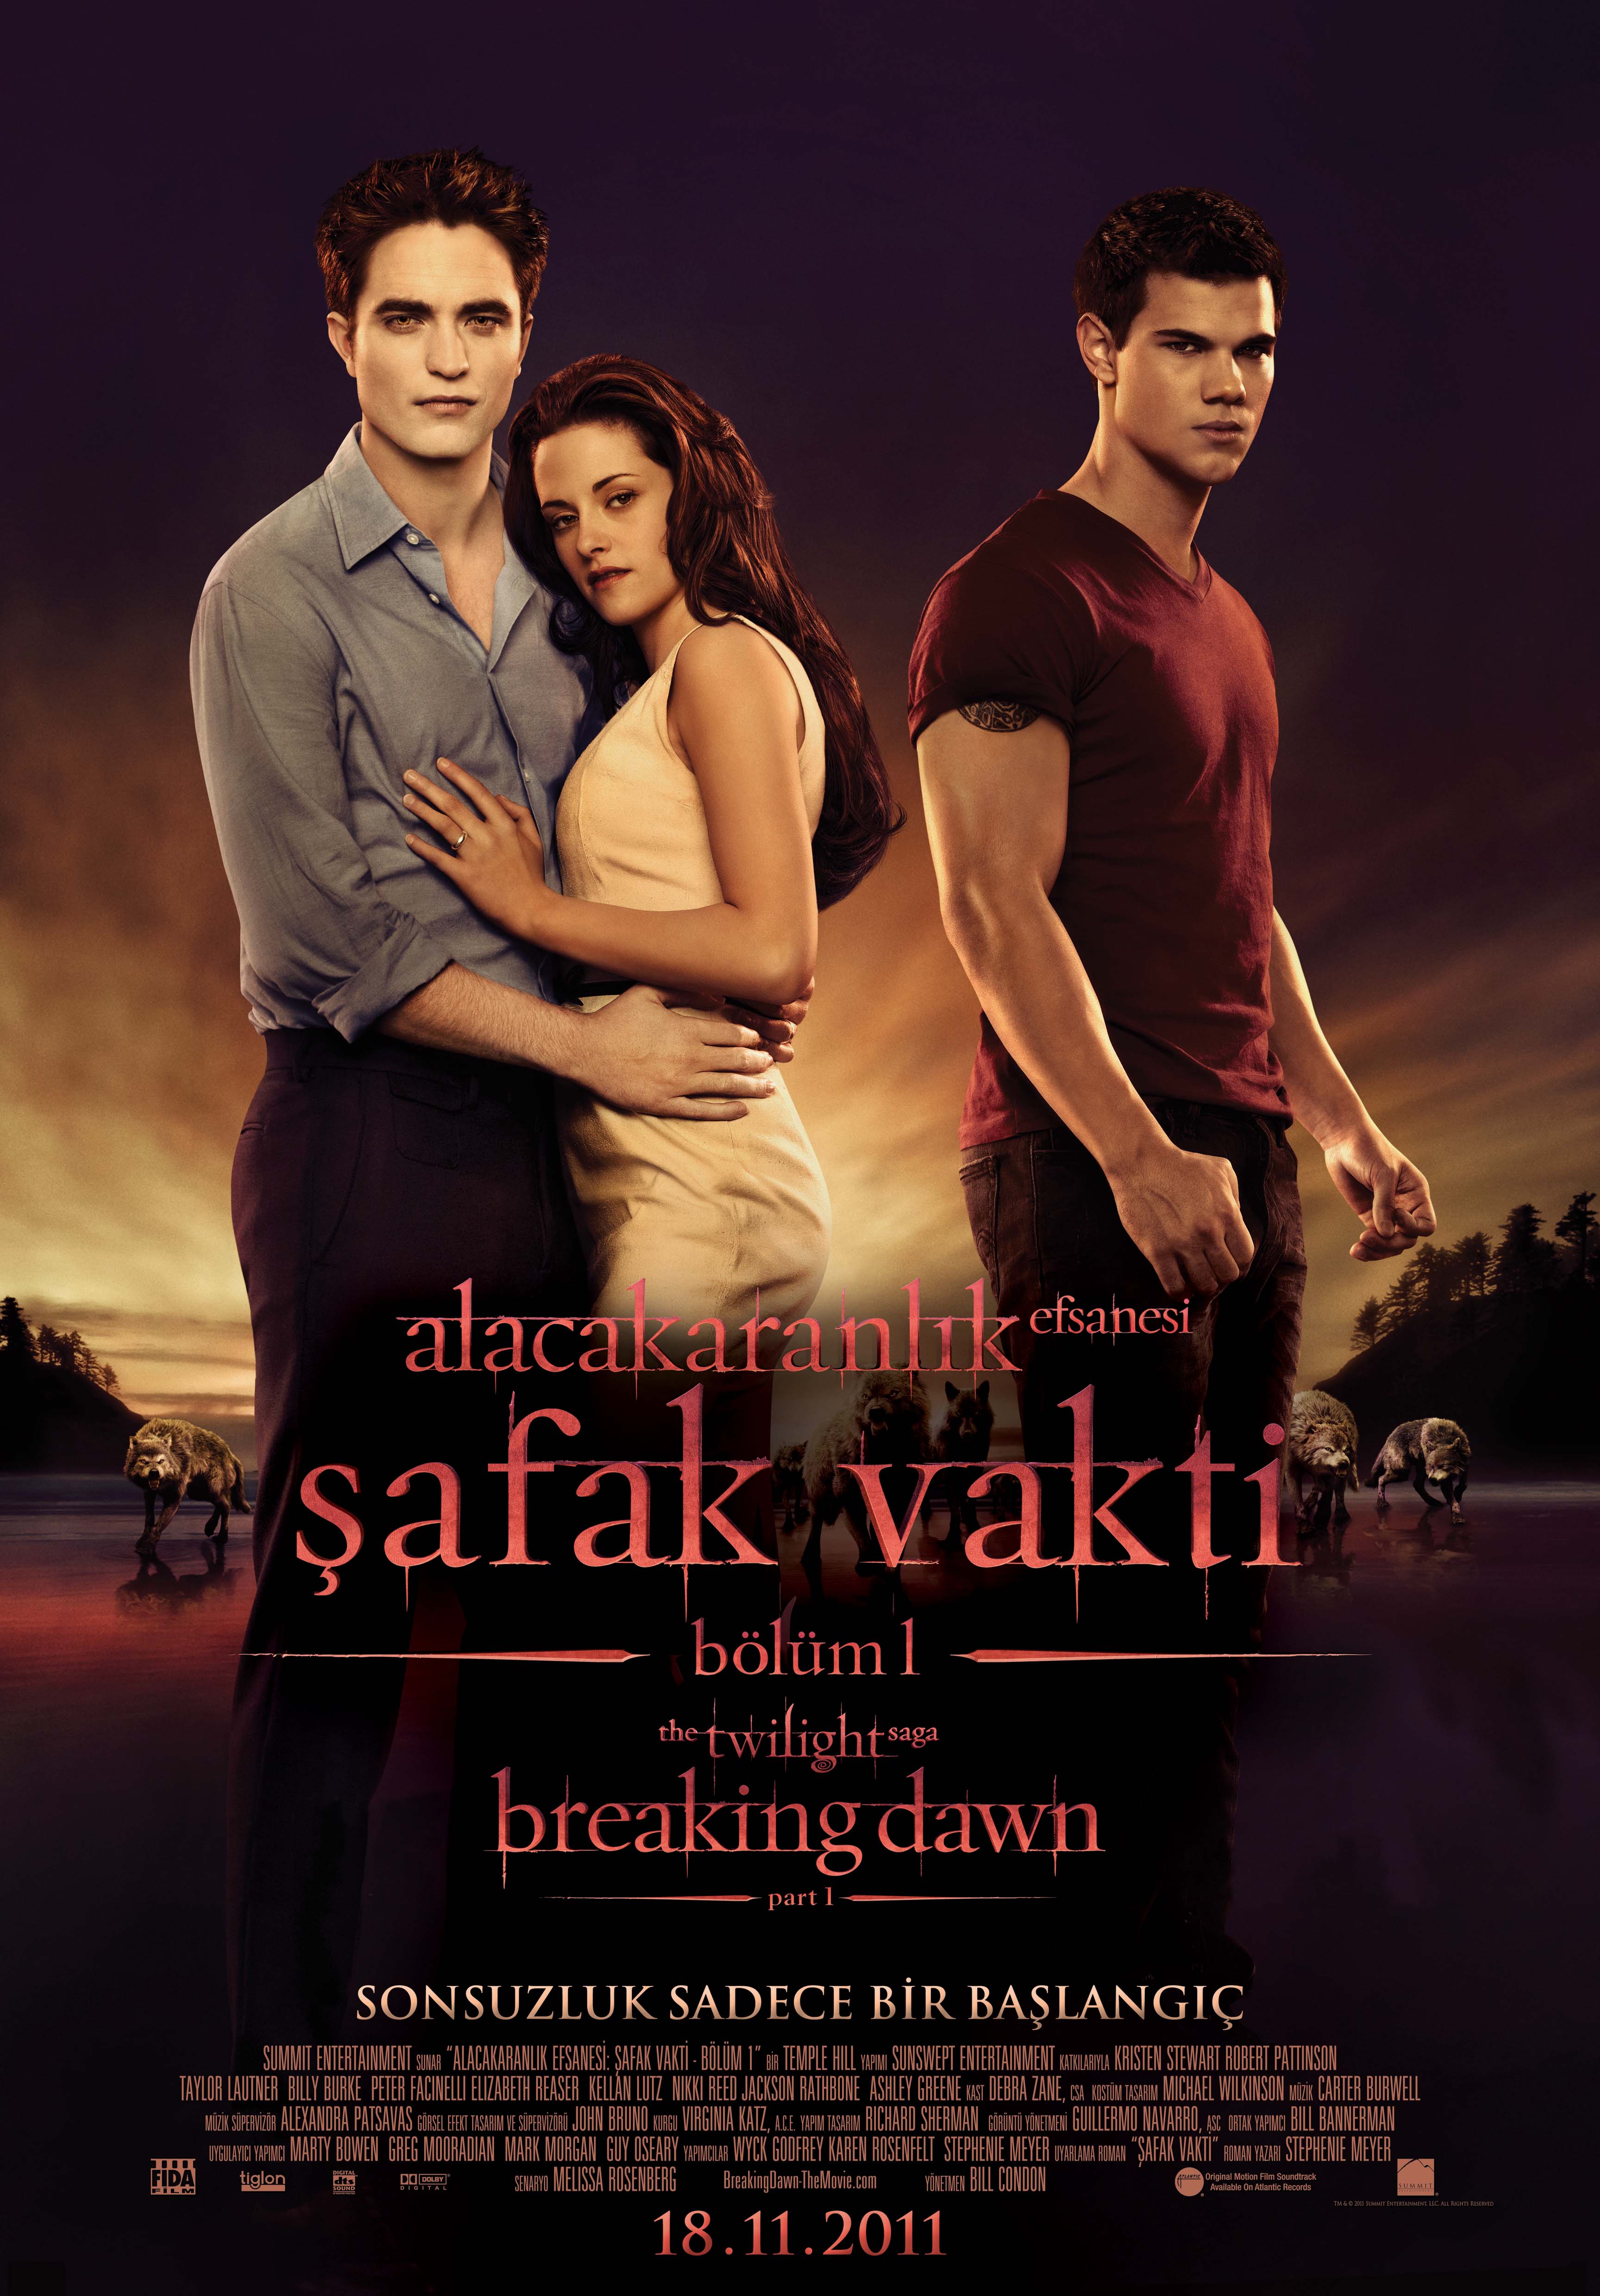 Alacakaranlık Efsanesi Şafak Vakti – The Twilight Saga Breaking Dawn 2011 Türkçe Dublaj izle